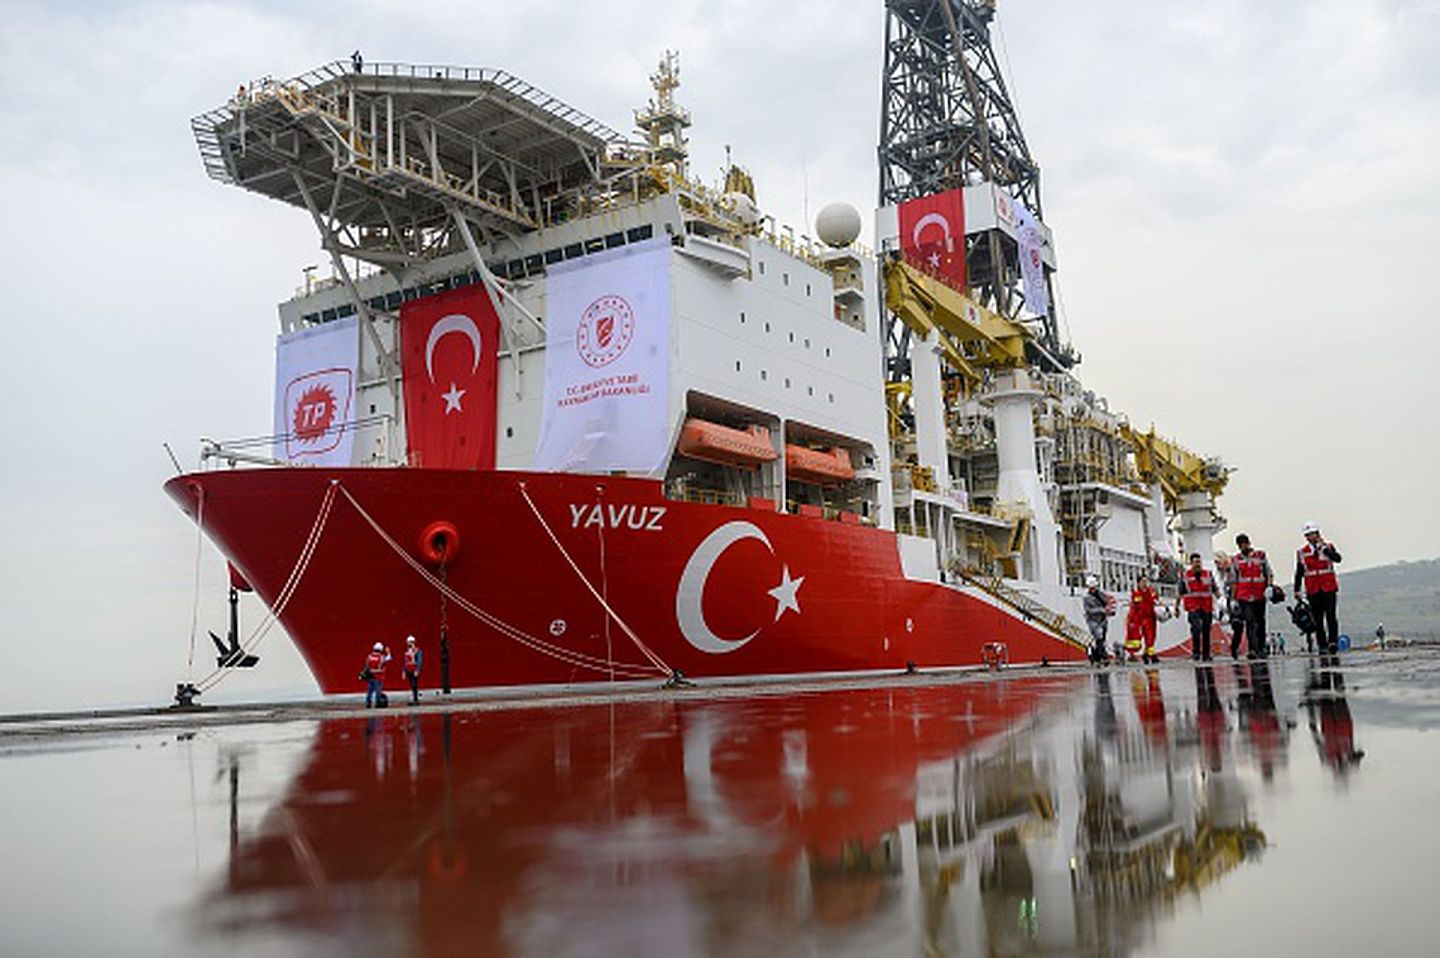 土耳其派往东地中海争议水域的另一艘勘探船“果敢”号（Yavuz），该船主要在土耳其——塞浦路斯争议海域进行勘探作业。（Getty Images）